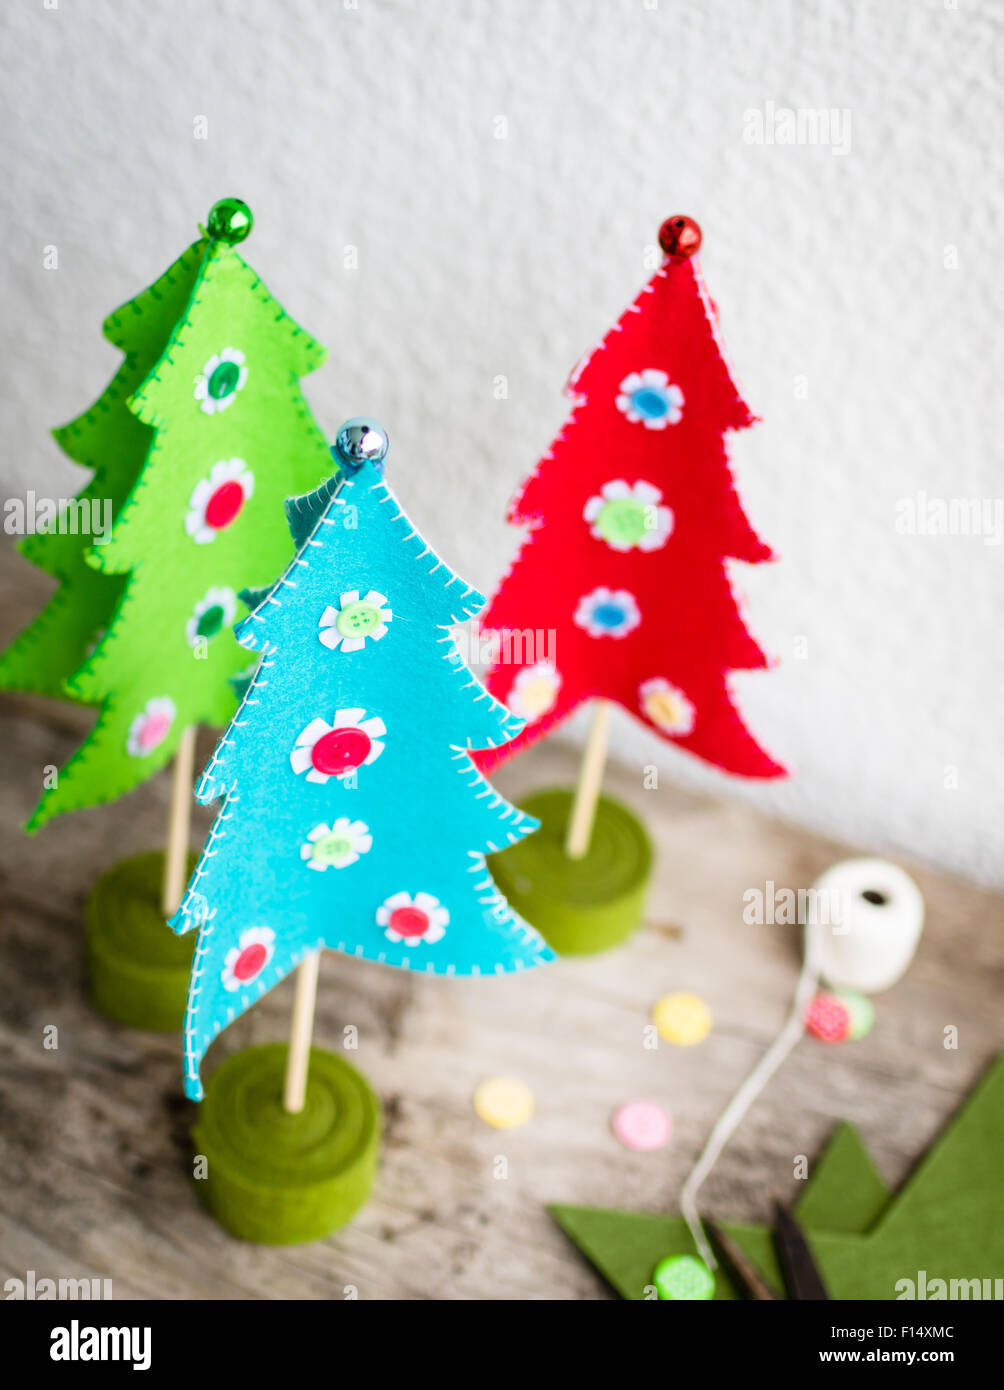 Les arbres de Noël, colorée à la main, selective focus Banque D'Images